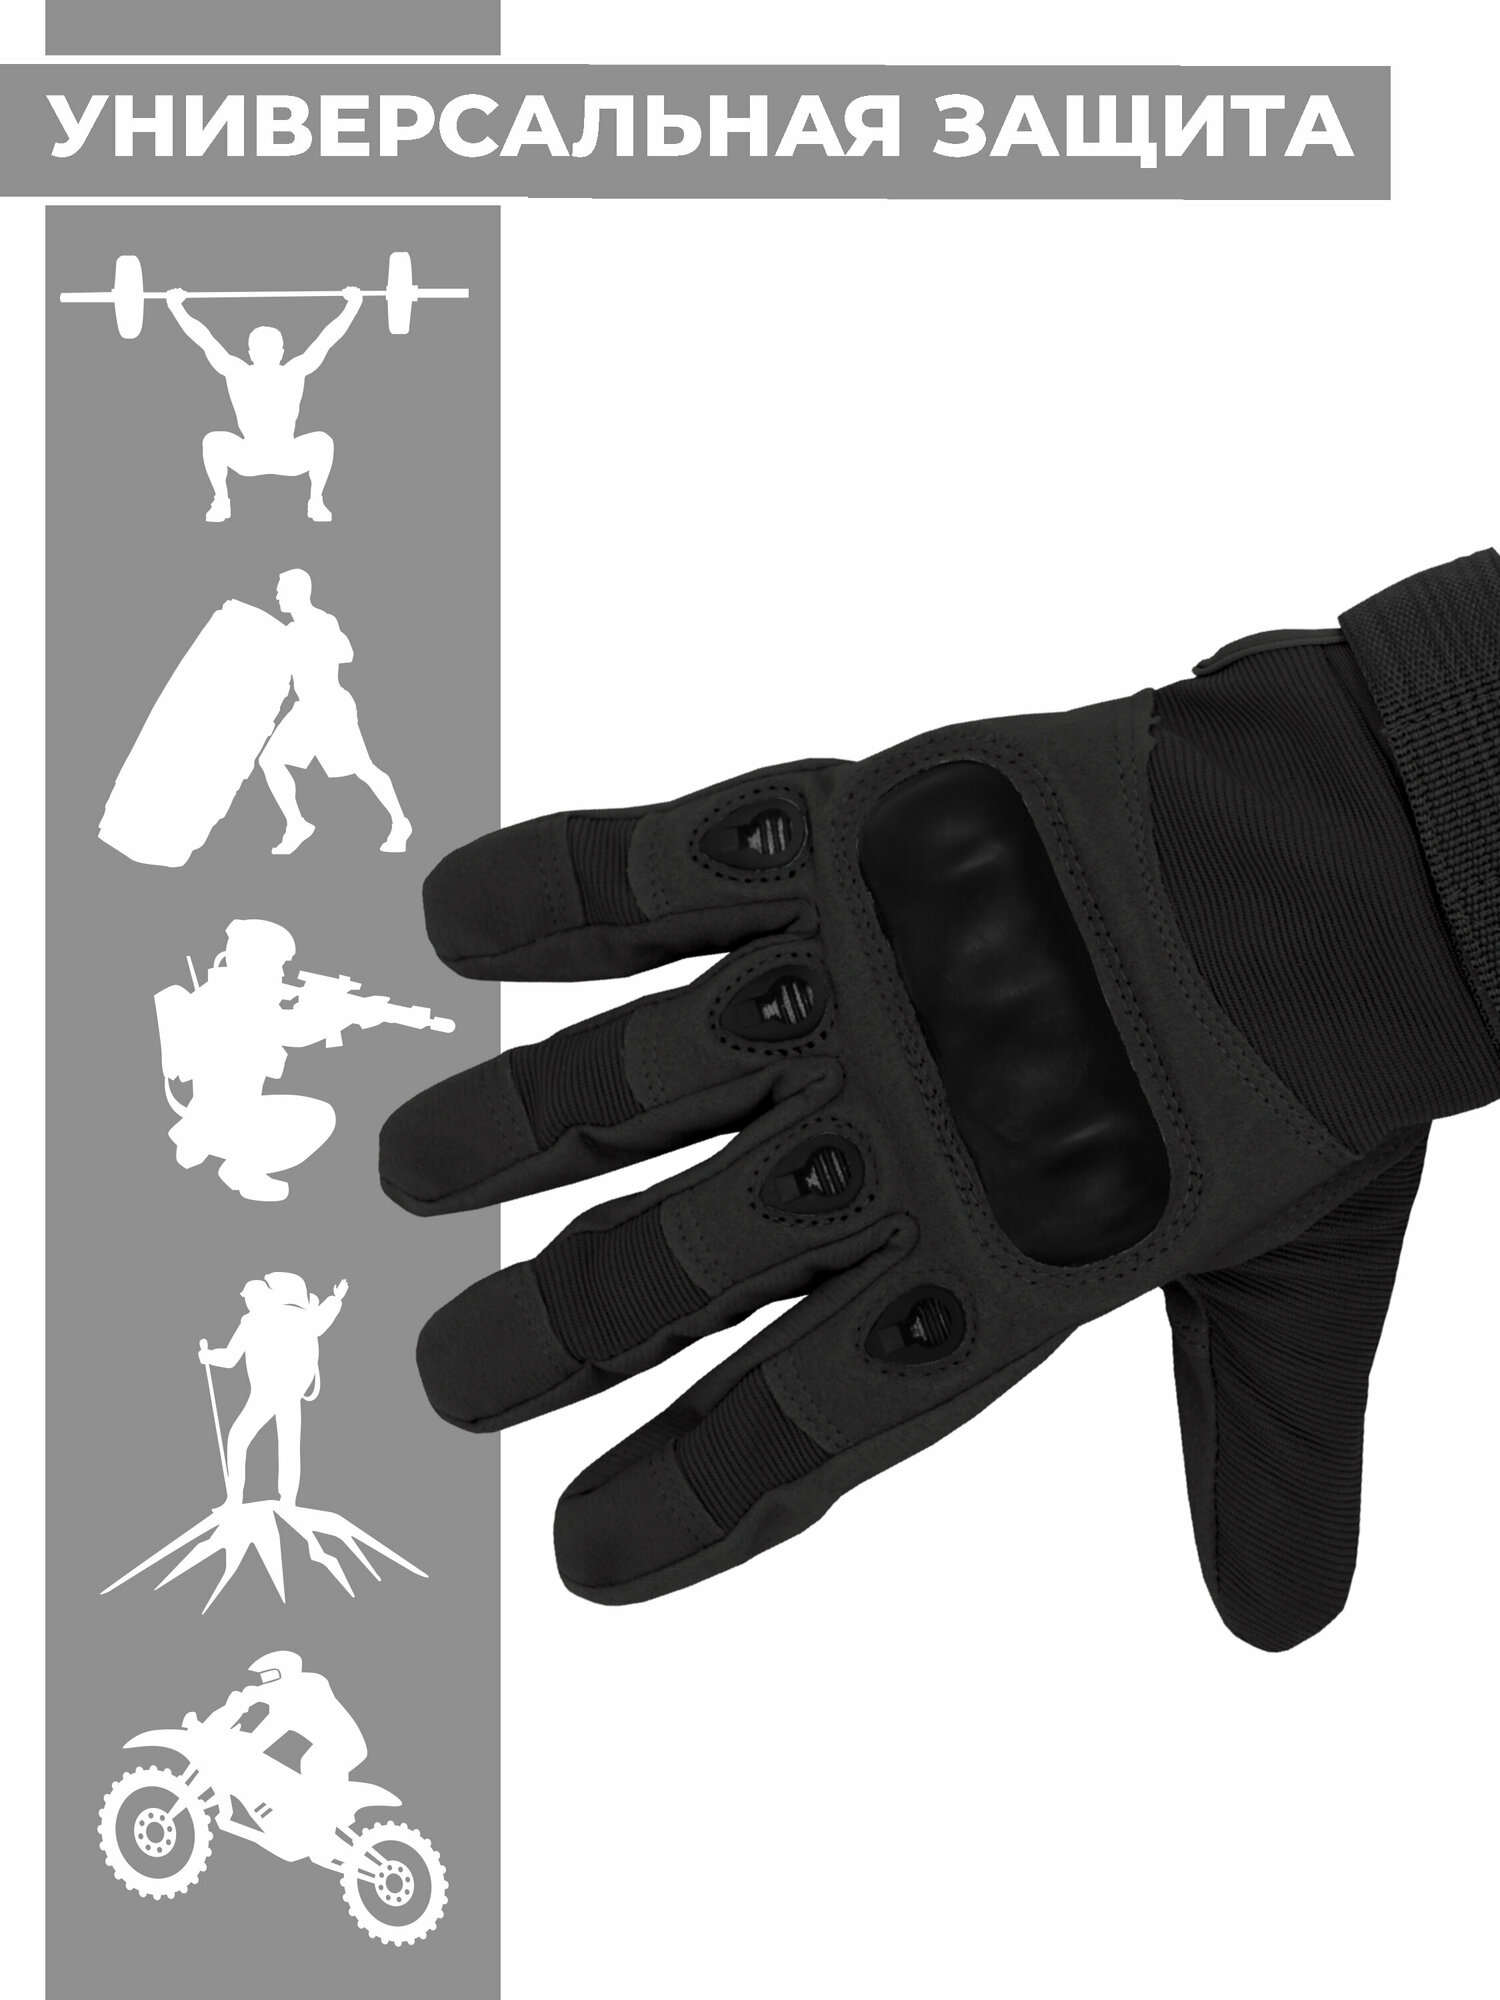 Защитные тактические перчатки Boomshakalaka, цвет черный, размер XL, обхват ладони 230-250 мм